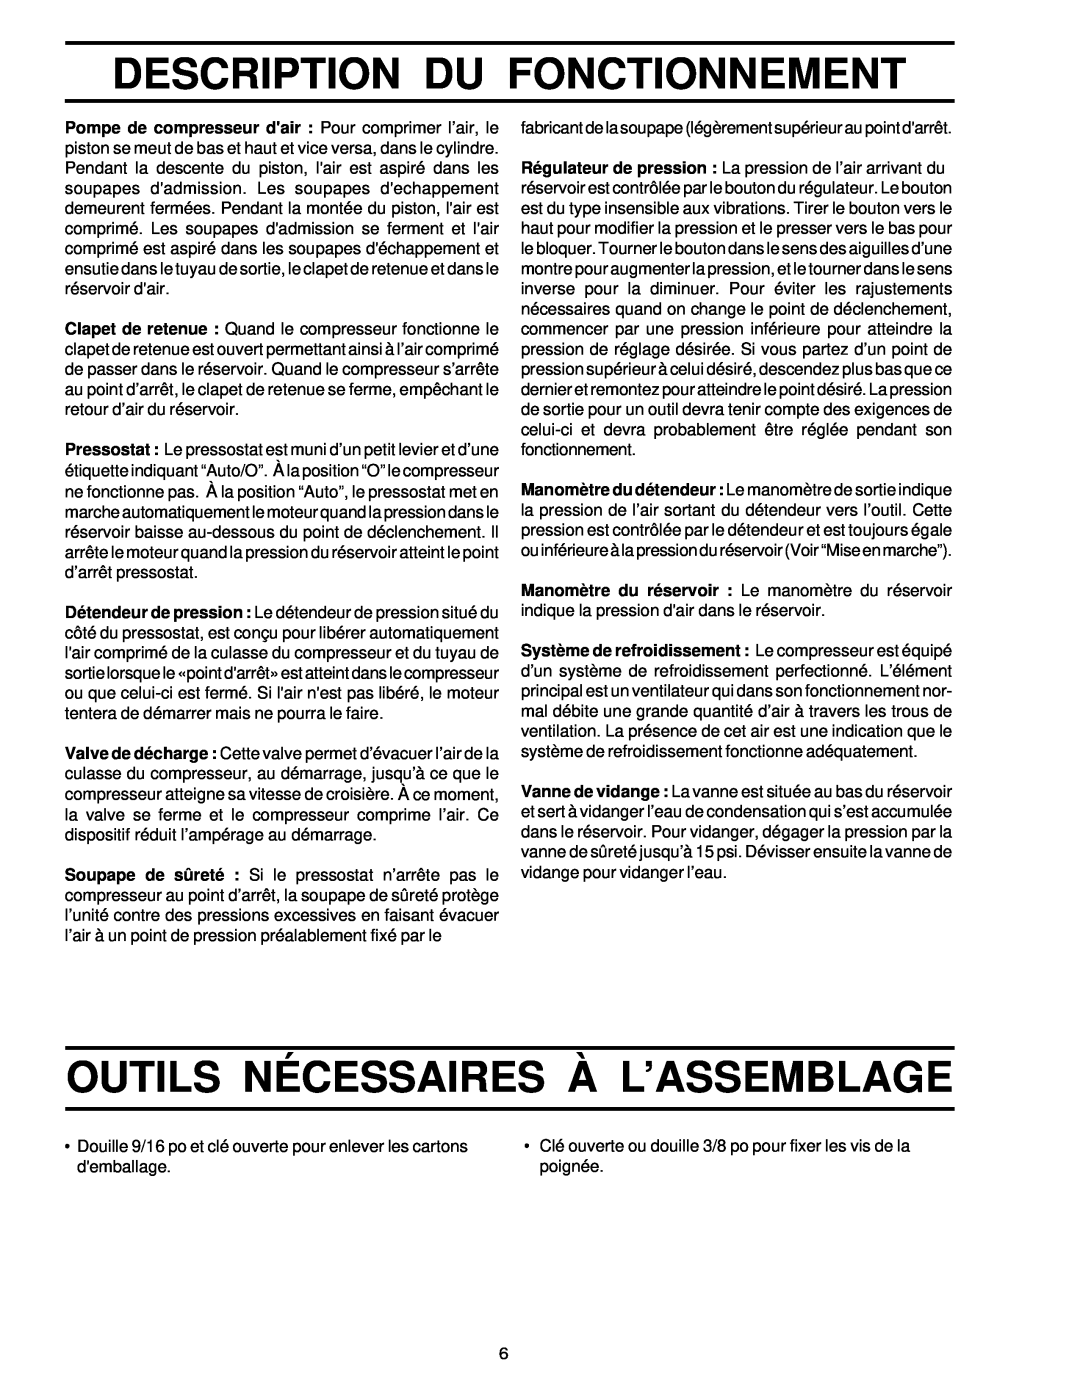 Sears 919.72512 owner manual Description Du Fonctionnement, Outils Nécessaires À L’Assemblage 